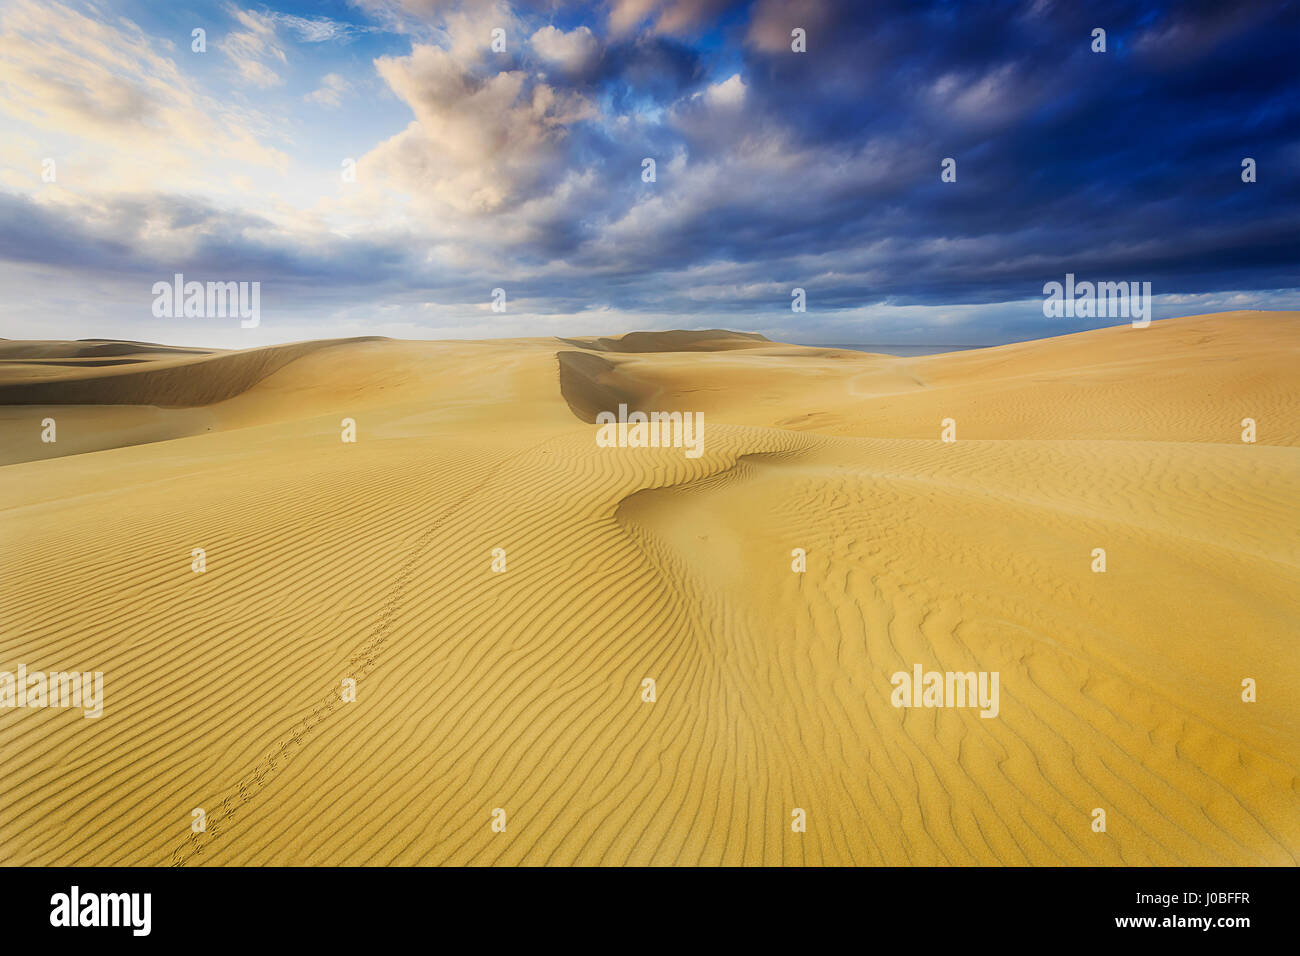 Les dunes de sable du désert vide à rayures jaune sous la surface des terres ciel nuageux pendant une tempête. Legprints de wild animal ou oiseau croise le chemin. Banque D'Images